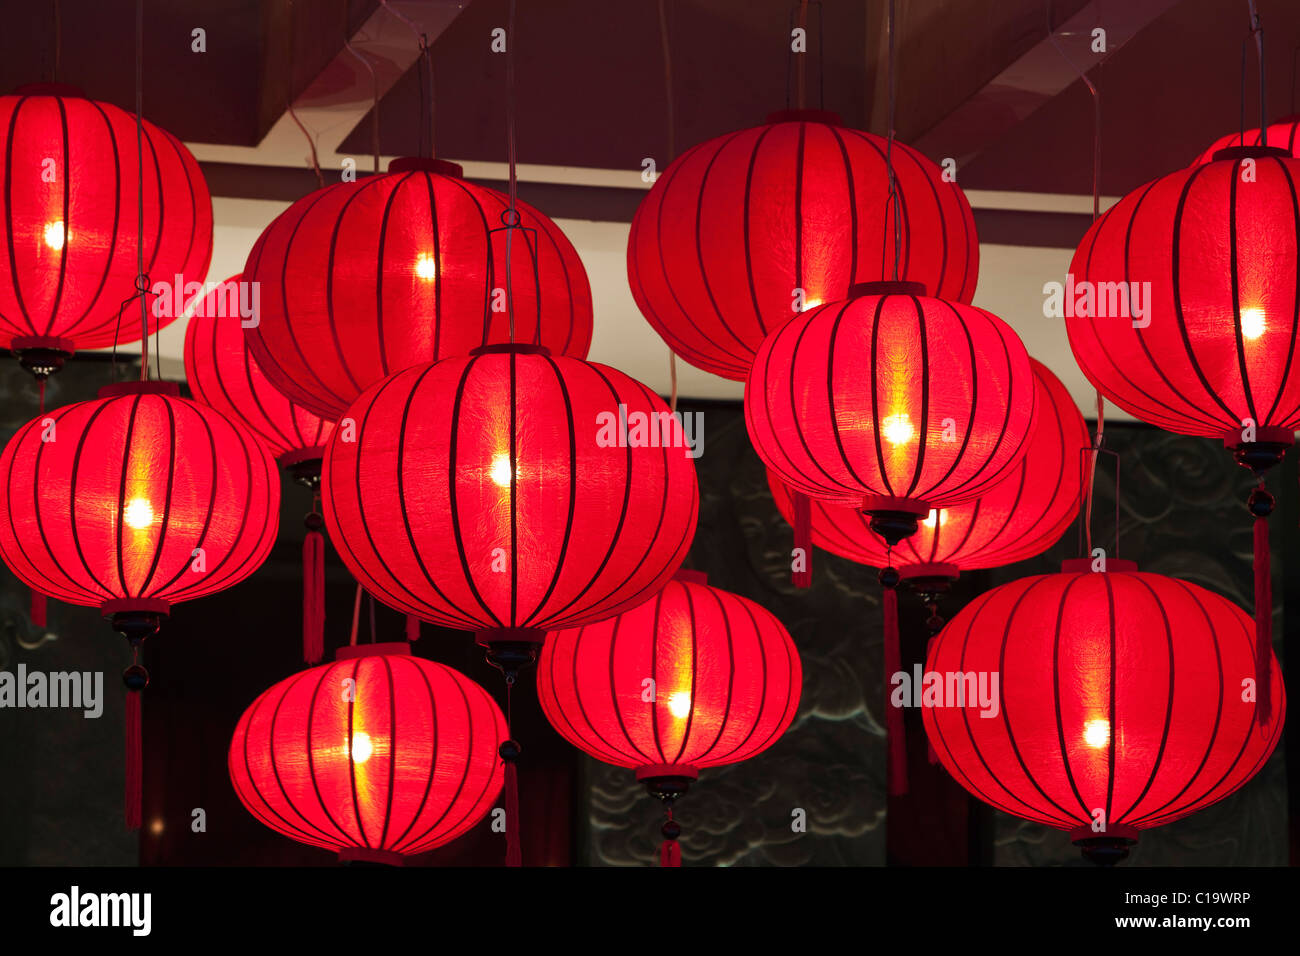 Lanterne rosse per il Capodanno Cinese, Singapore Foto Stock